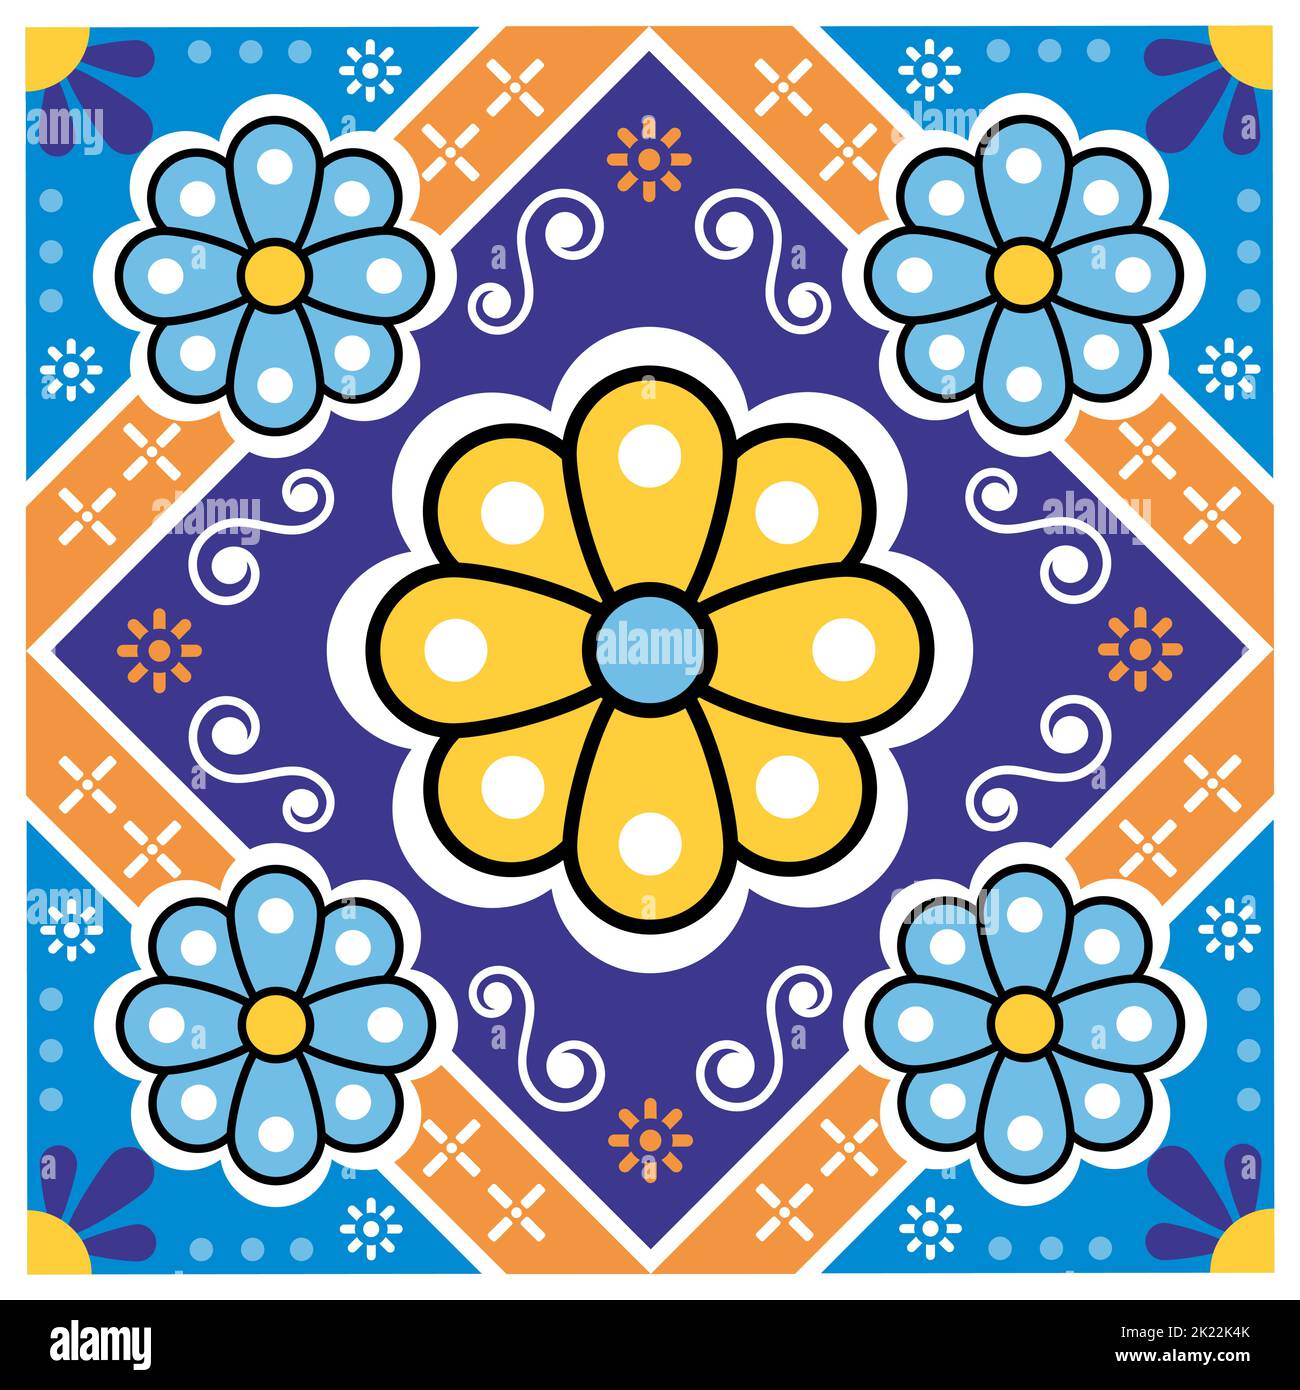 Nahtlose Vektorgrafik mit floralen Kacheln, inspiriert von der Volkskunst aus Mexiko - einzelnes talavera-Design, perfekt für Tapeten, Textilien oder Stoffdrucke Stock Vektor